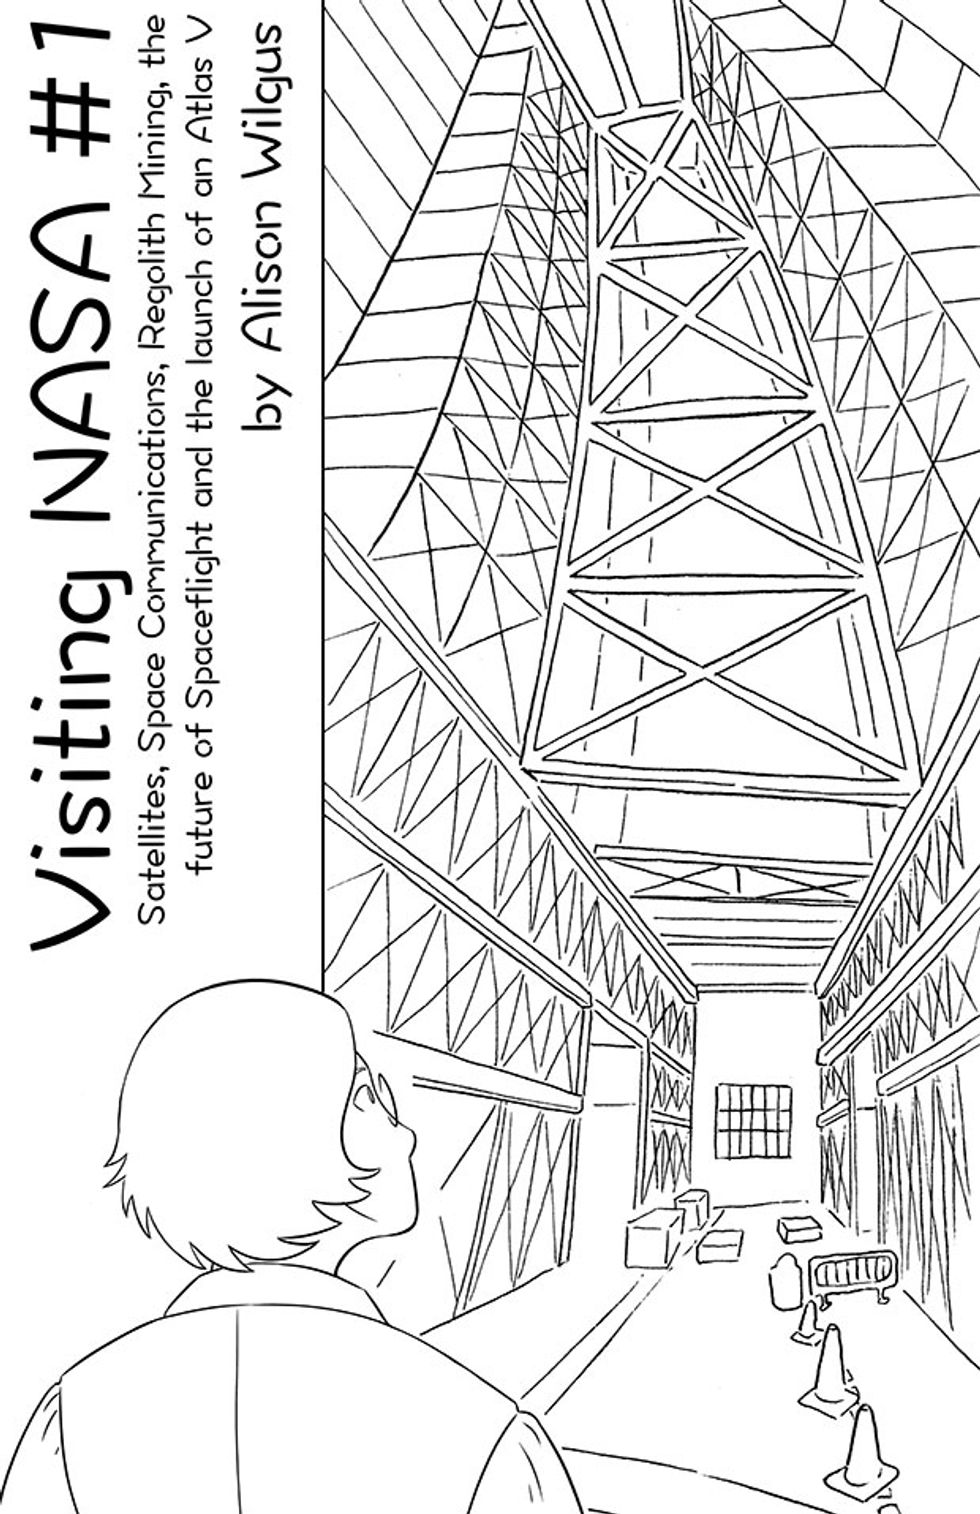 Book cover, 'Visiting NASA'